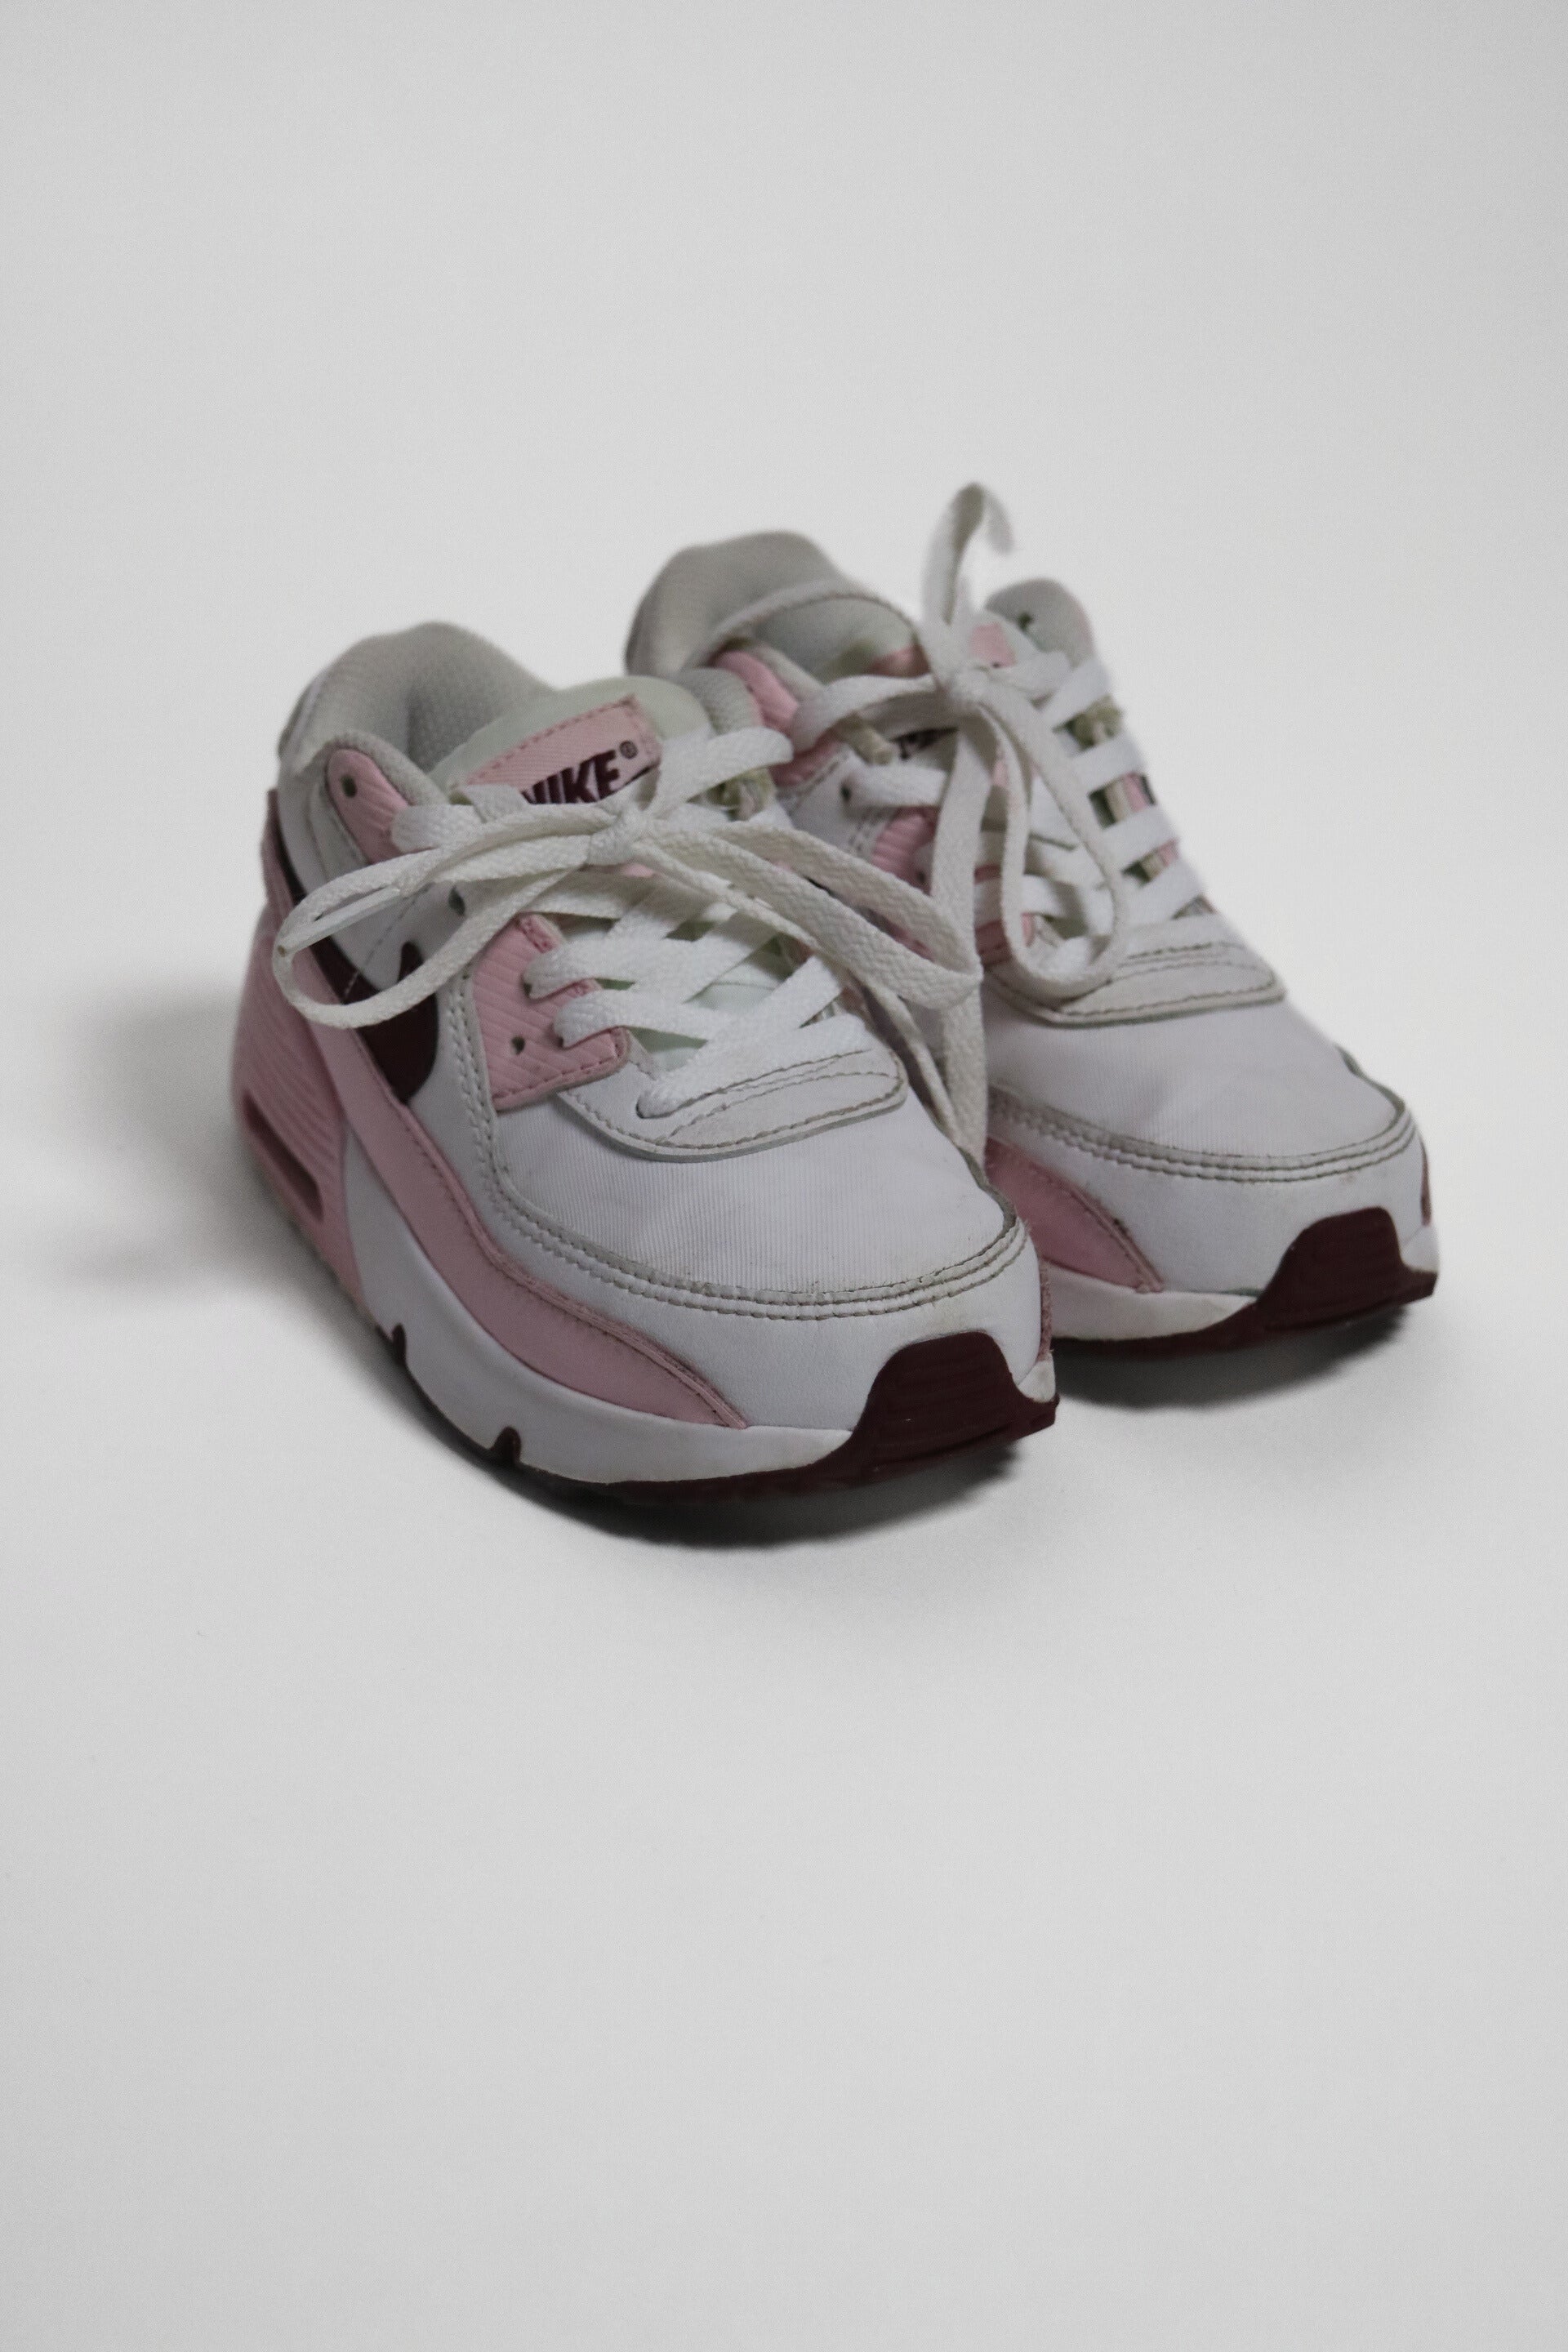 Vita och rosa sneakers från Nike med lila detaljer. Av modell Nike Air Max.